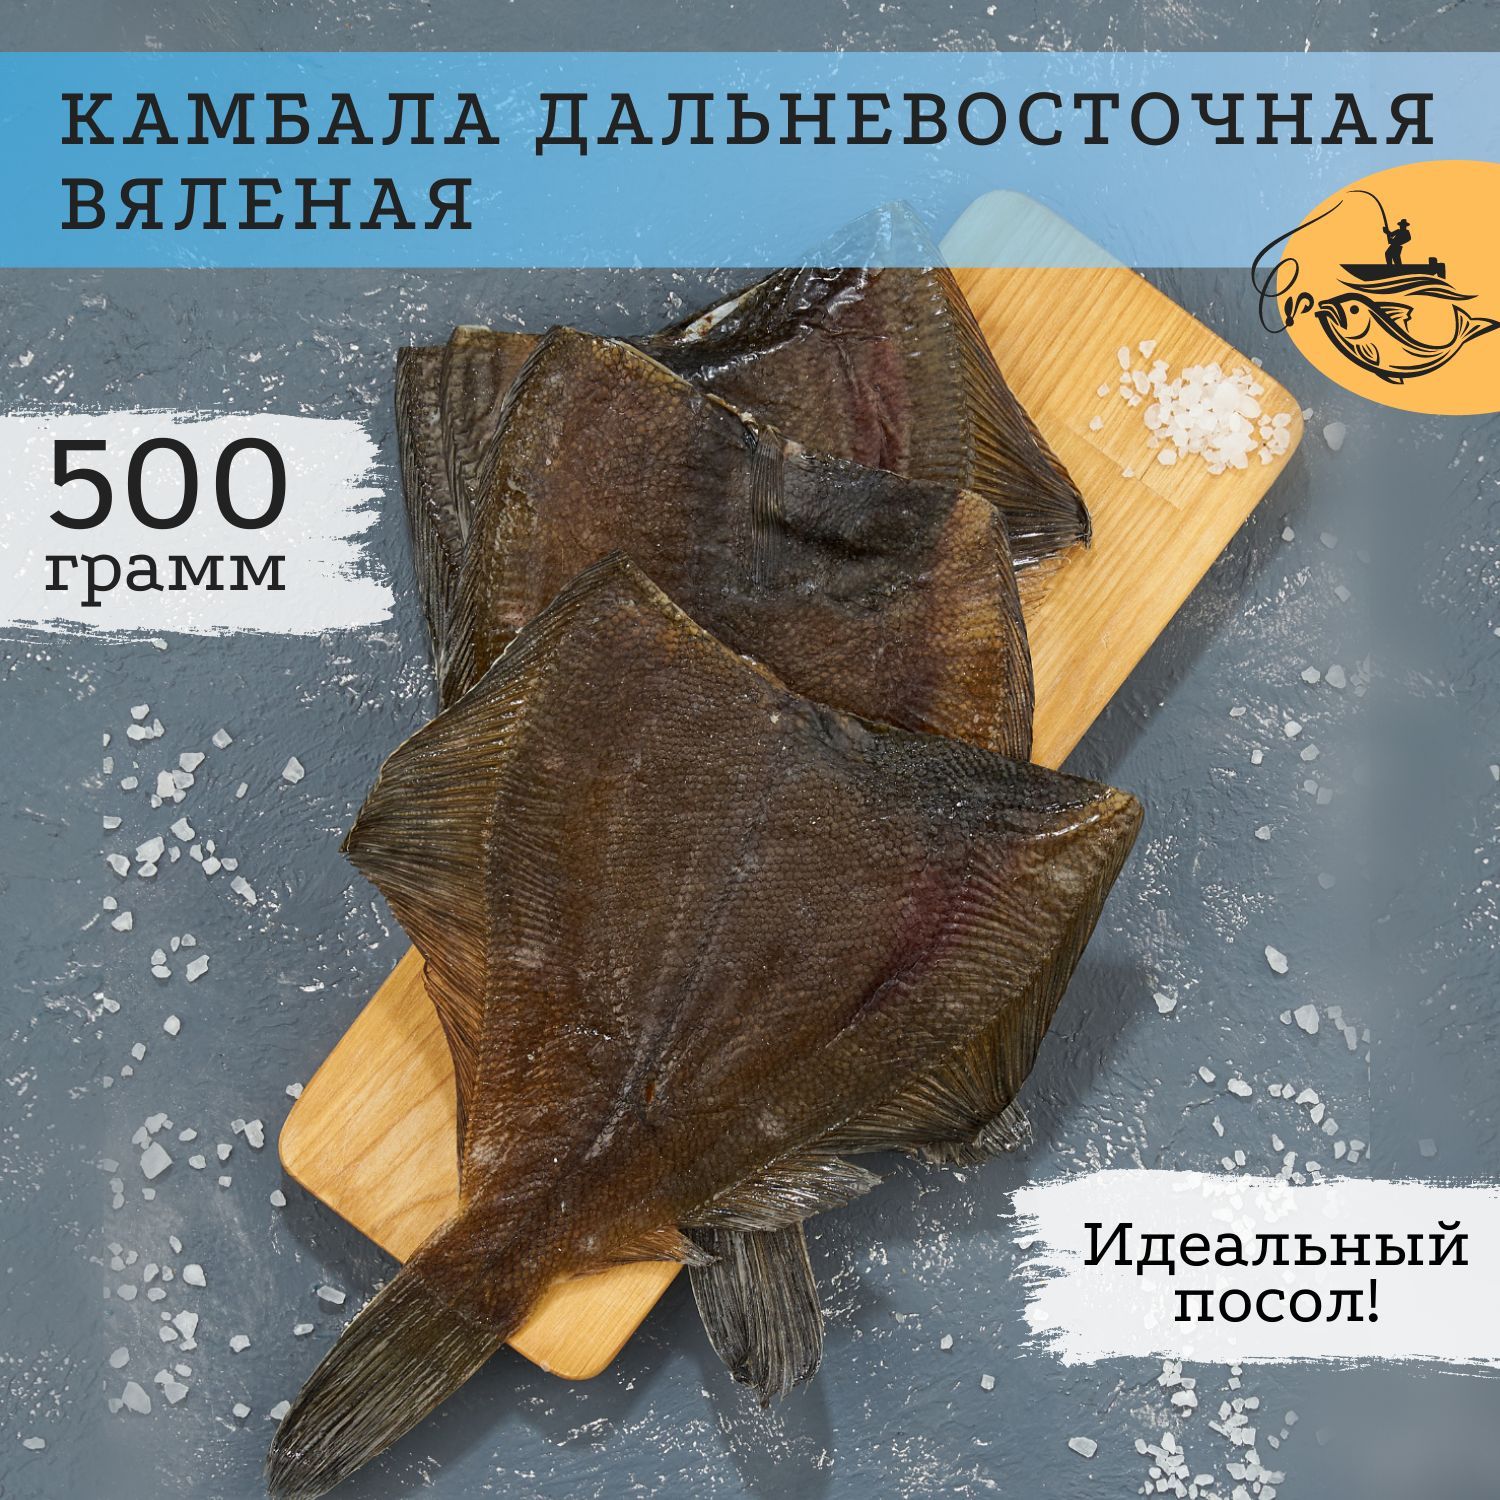 Желтый полосатик: особенности обитания в России